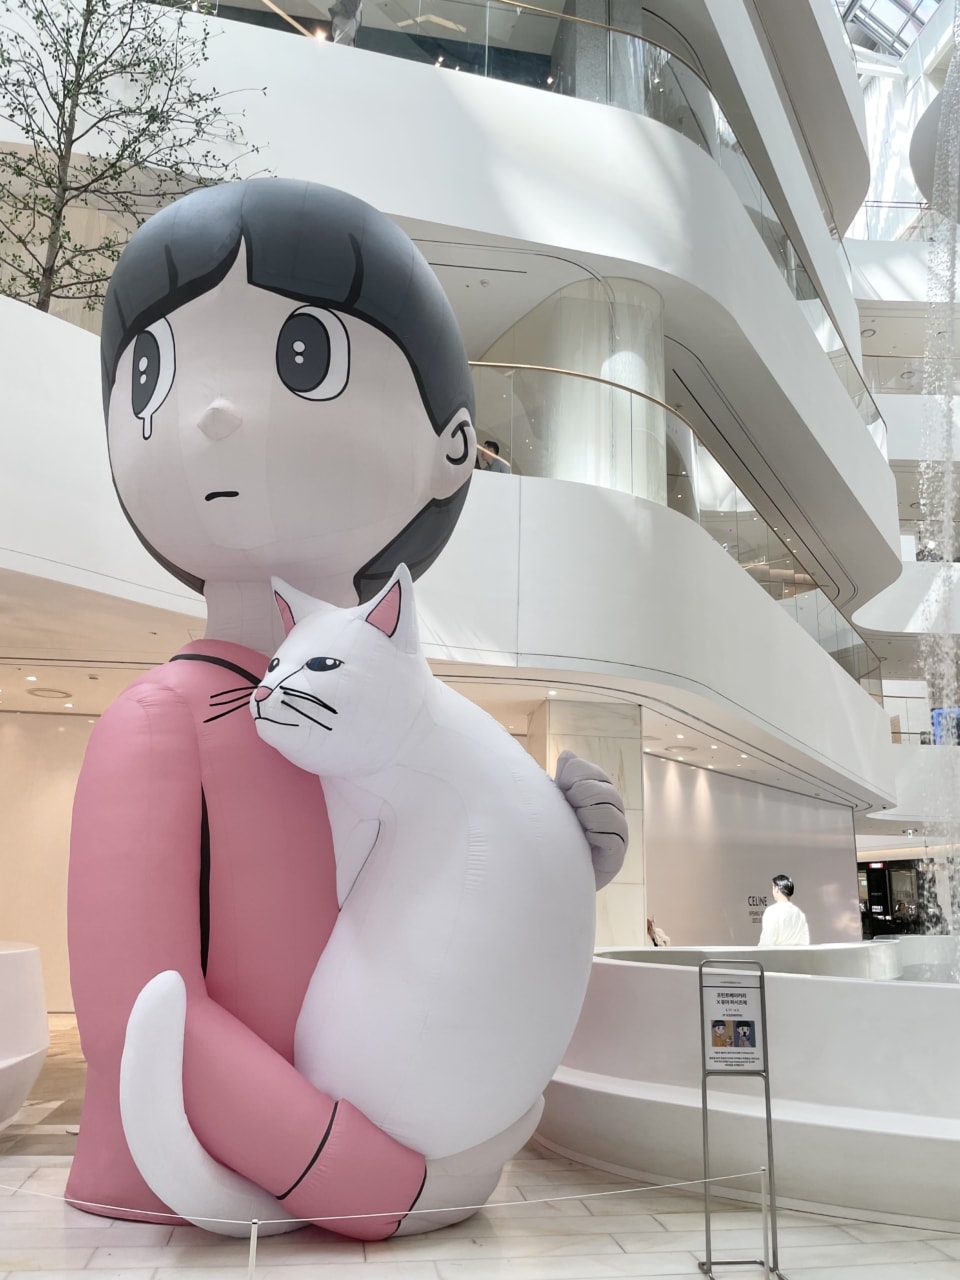 ザ・ヒュンダイ ソウル1Fのウォーターフォールガーデンに展示されていた、日本人アーティストYUYA HASHIZUME氏の巨大3Dアート。